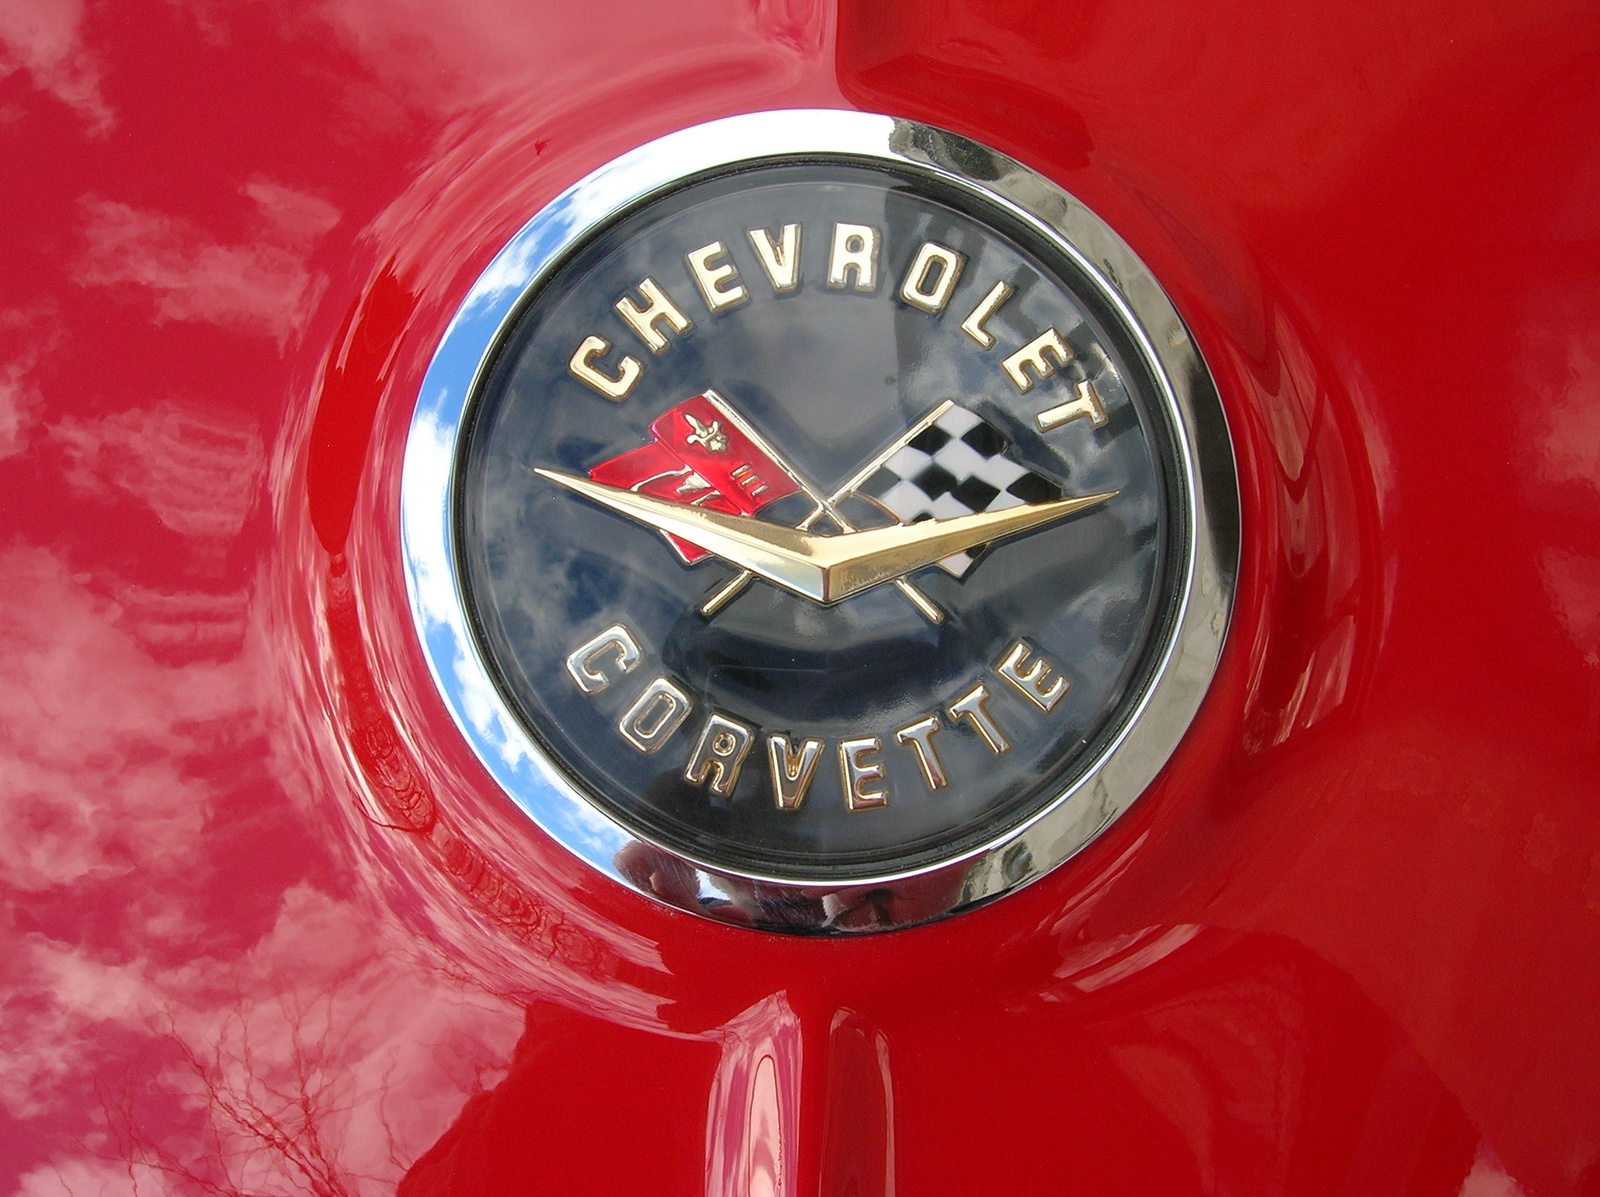 Chevrolet Corvette jel